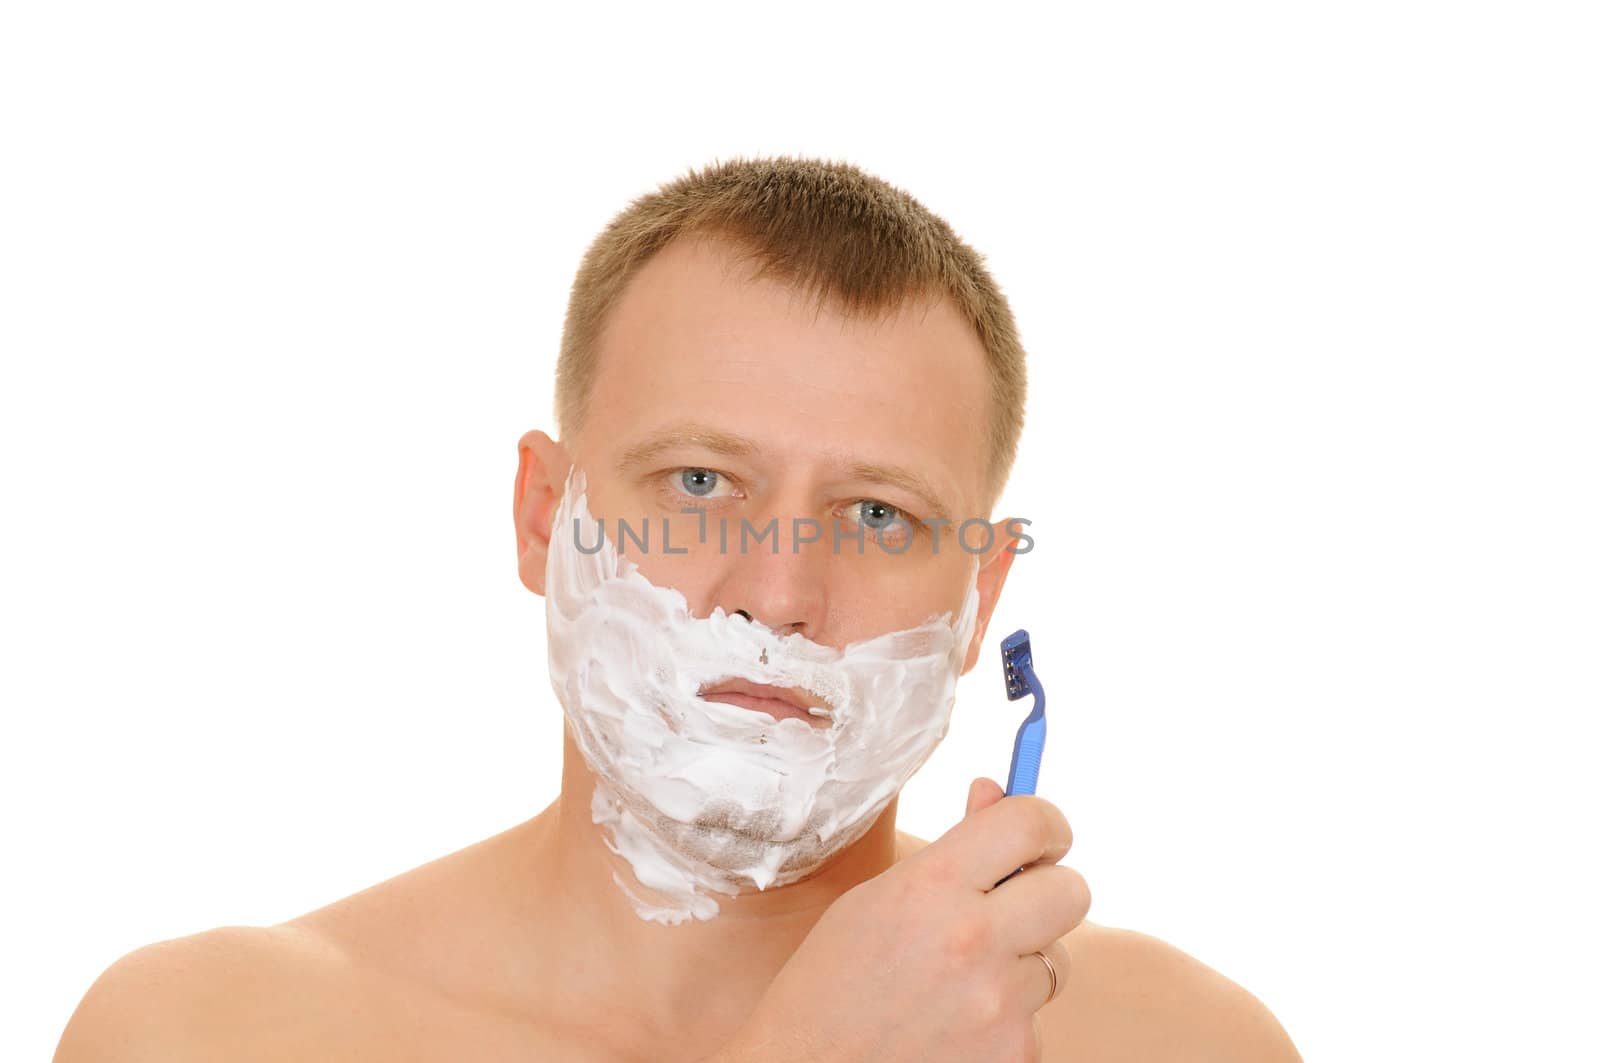 shaving by uriy2007